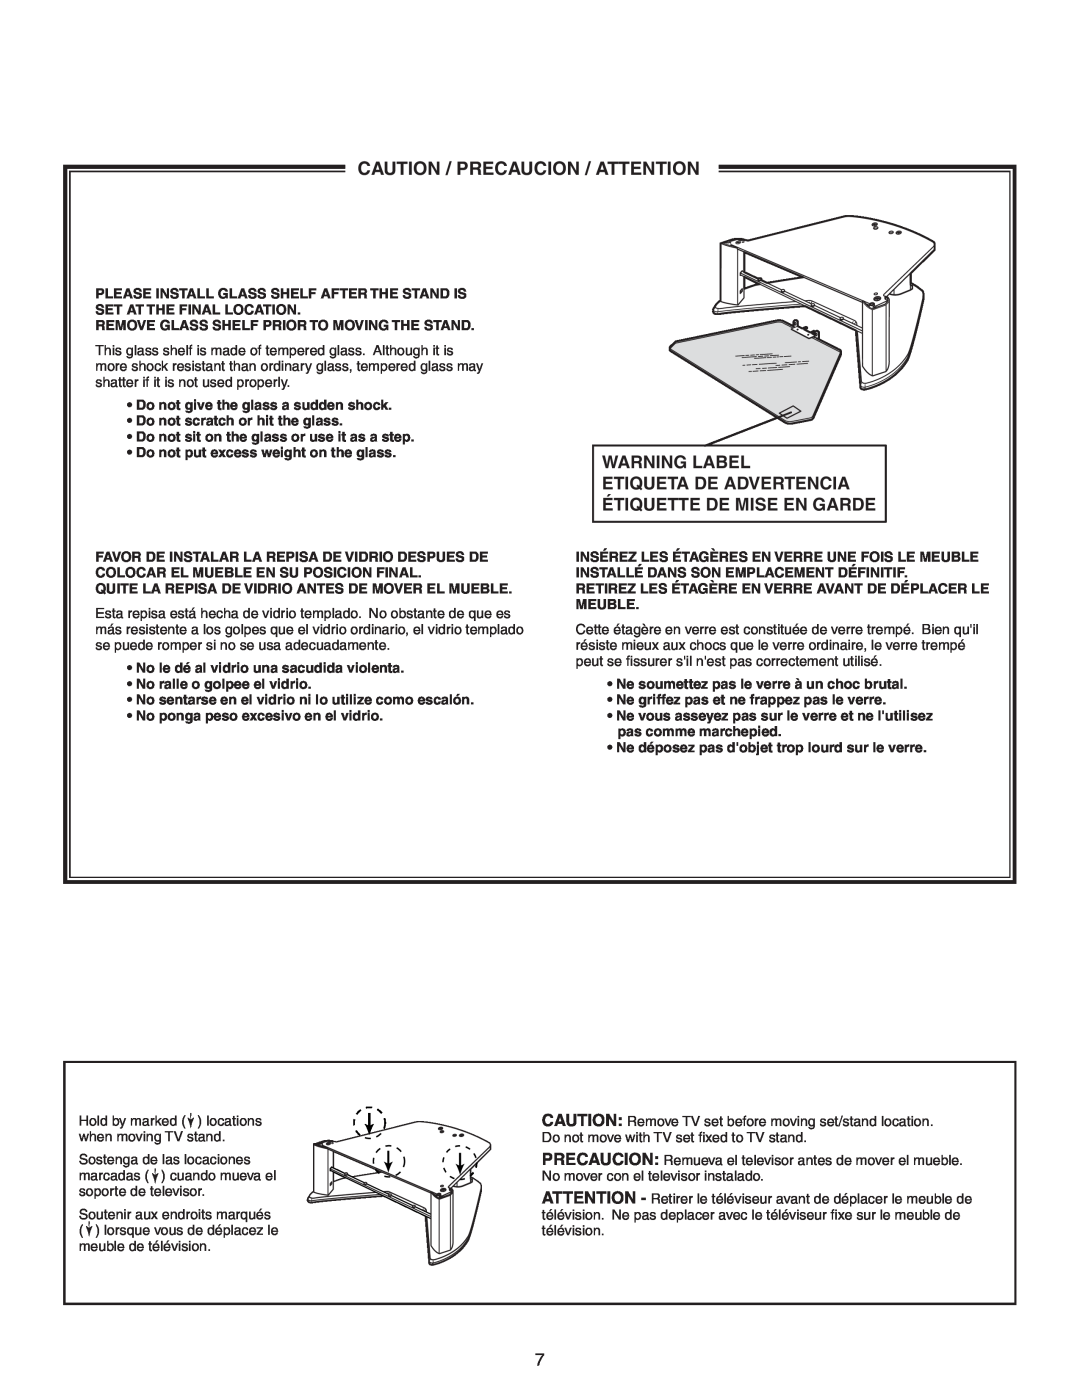 Sony SU-27HX1 manual Caution / Precaucion / Attention, Warning Label 